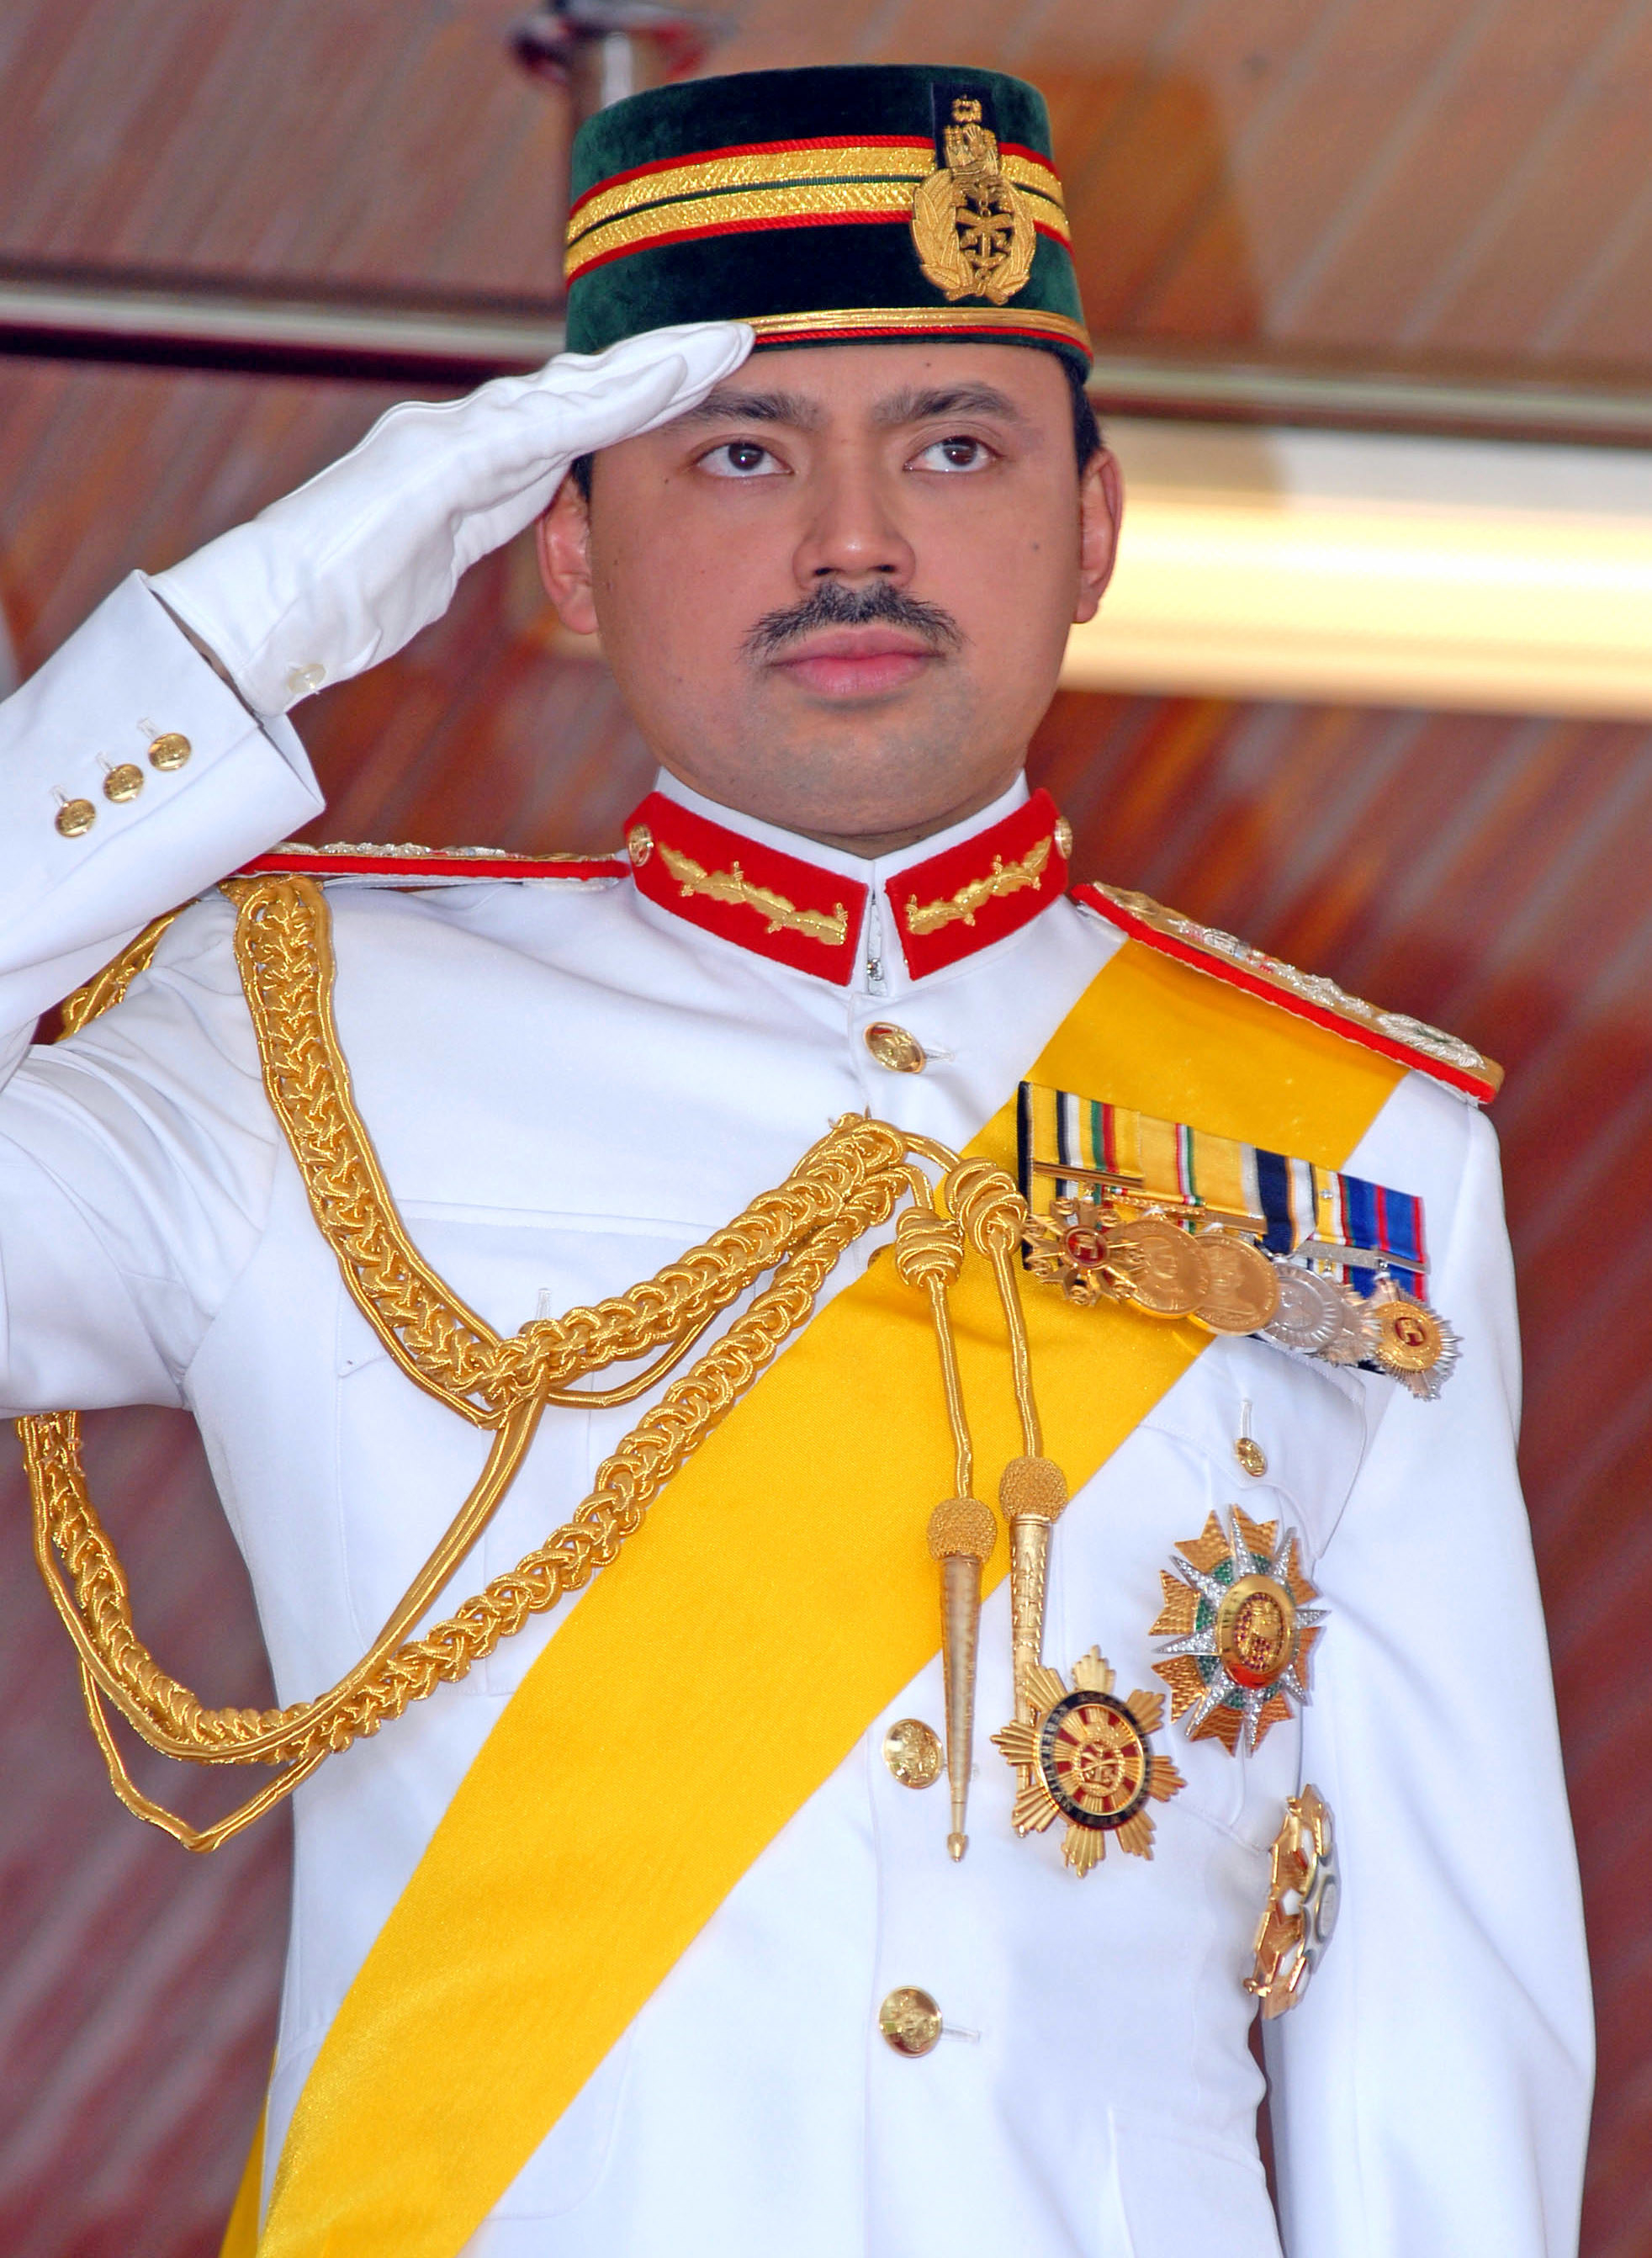 the crown prince saluting